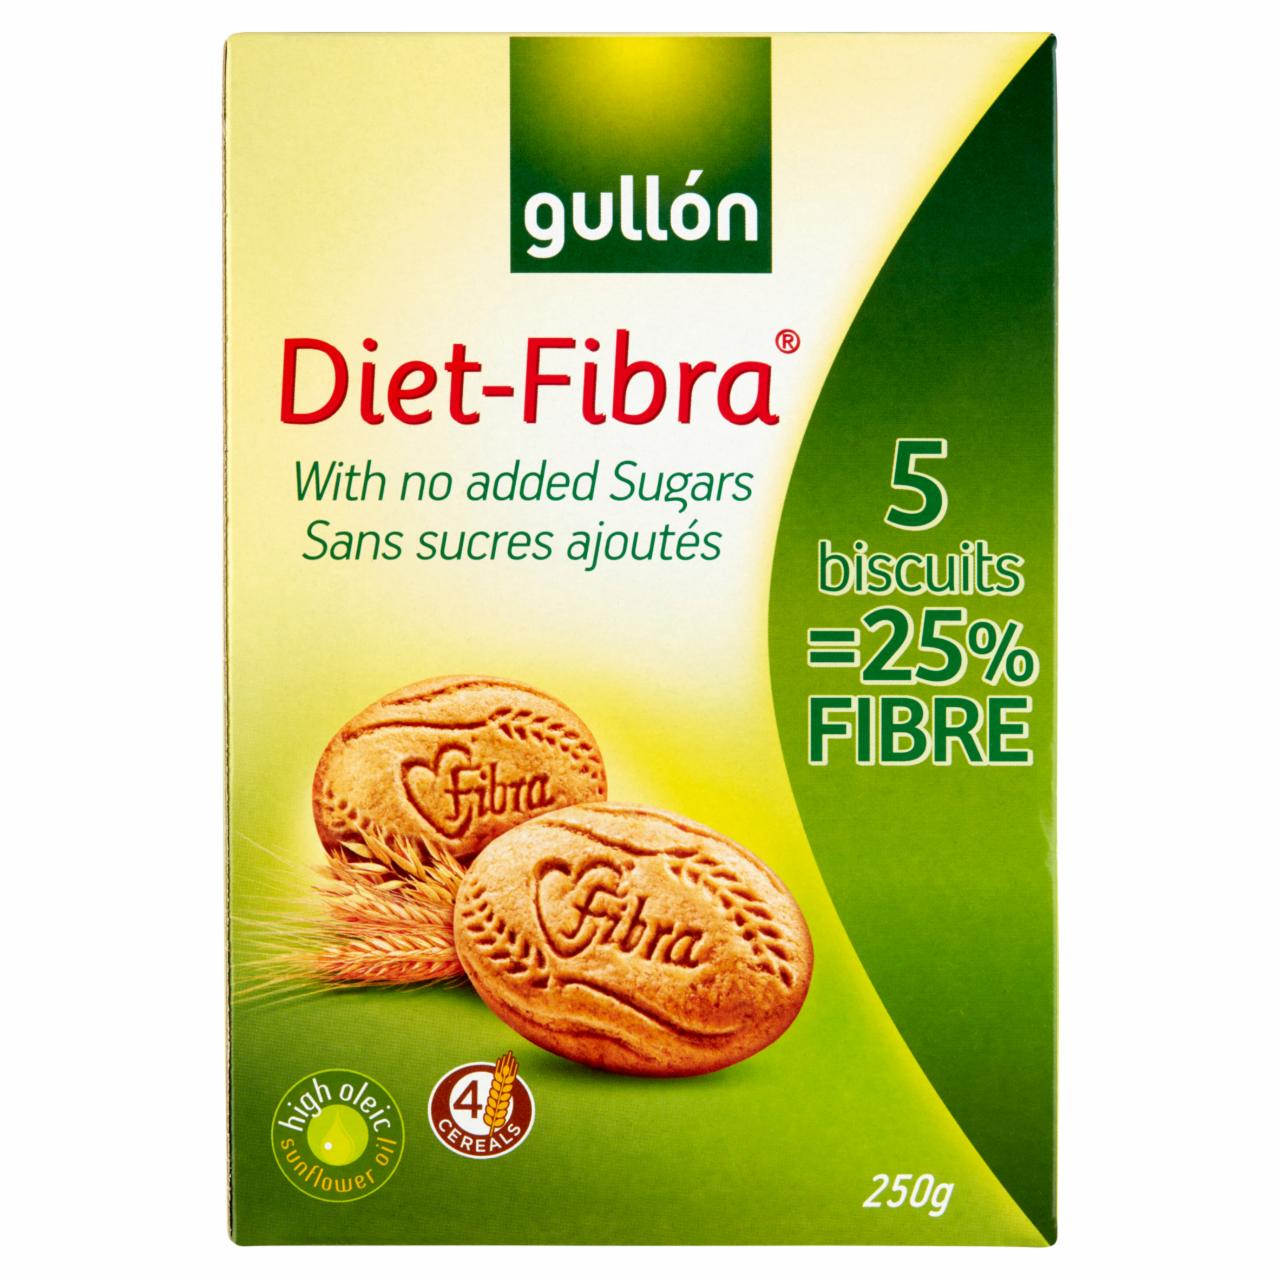 Képek - Gullón Diet-Fibra élelmi rostban gazdag keksz, hozzáadott cukor nélkül édesítőszerrel 250 g